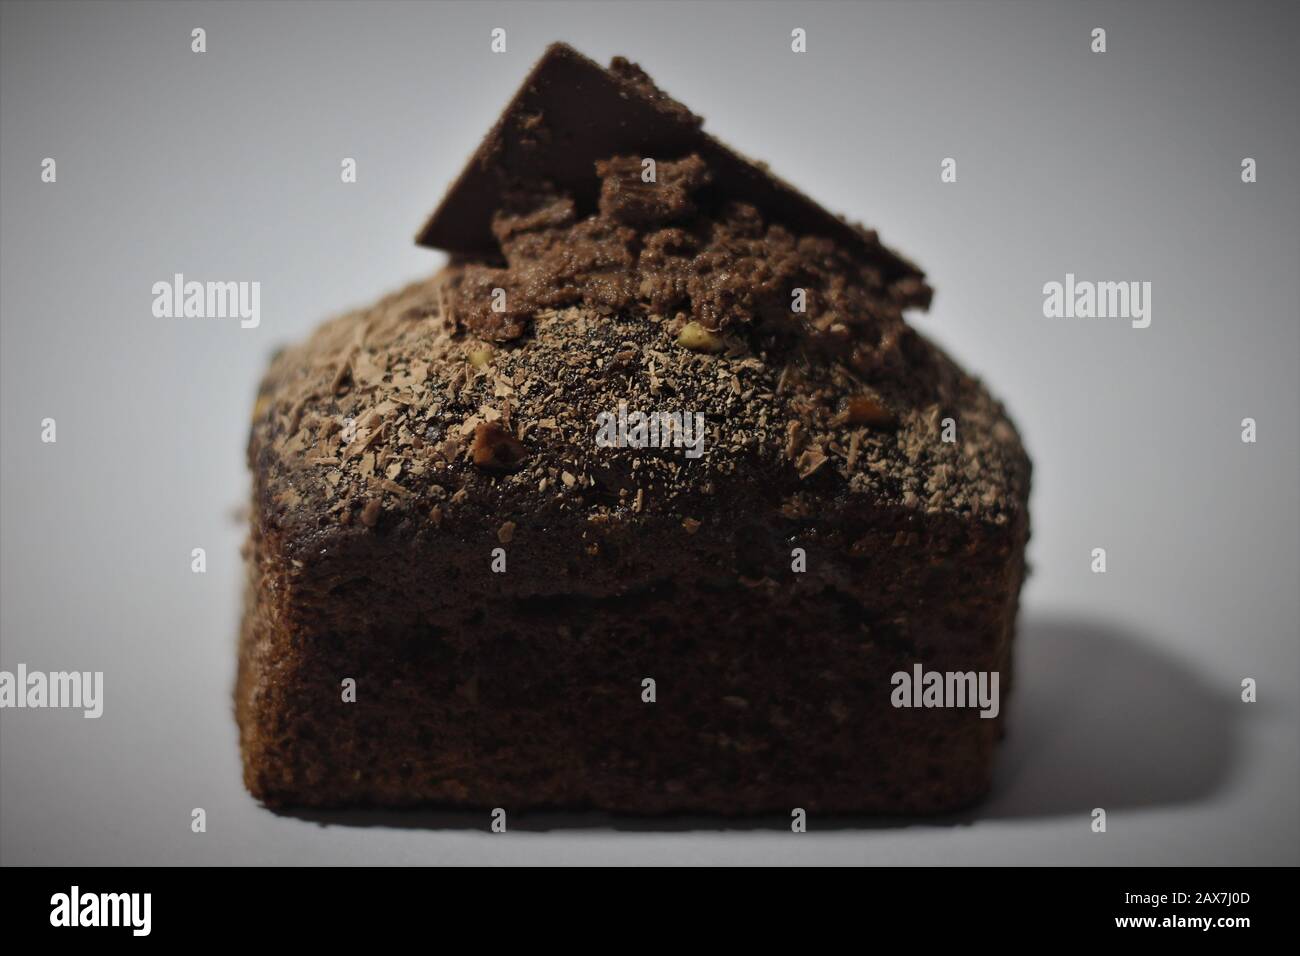 Chocolate cake on white background Stock Photo